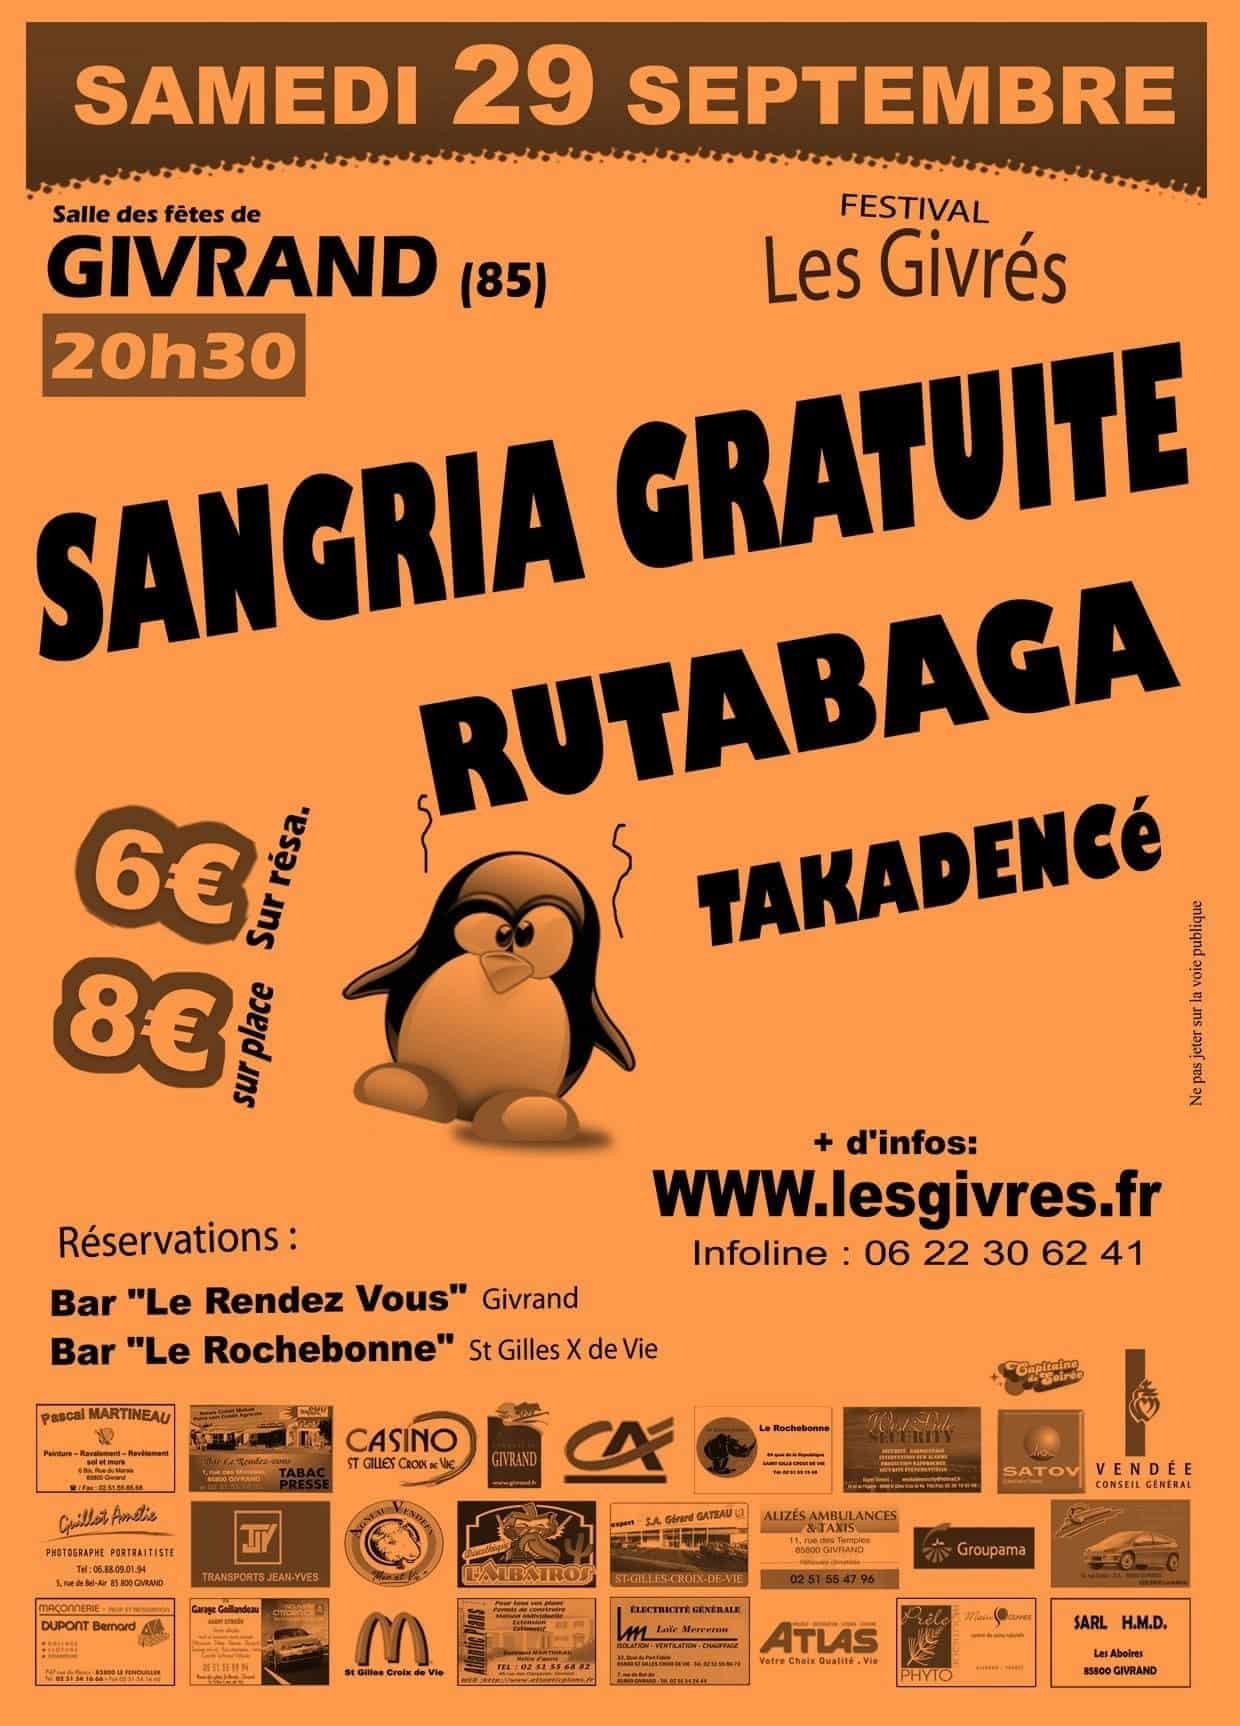 Affiche Festival Les Givrés 2007 - Givrand